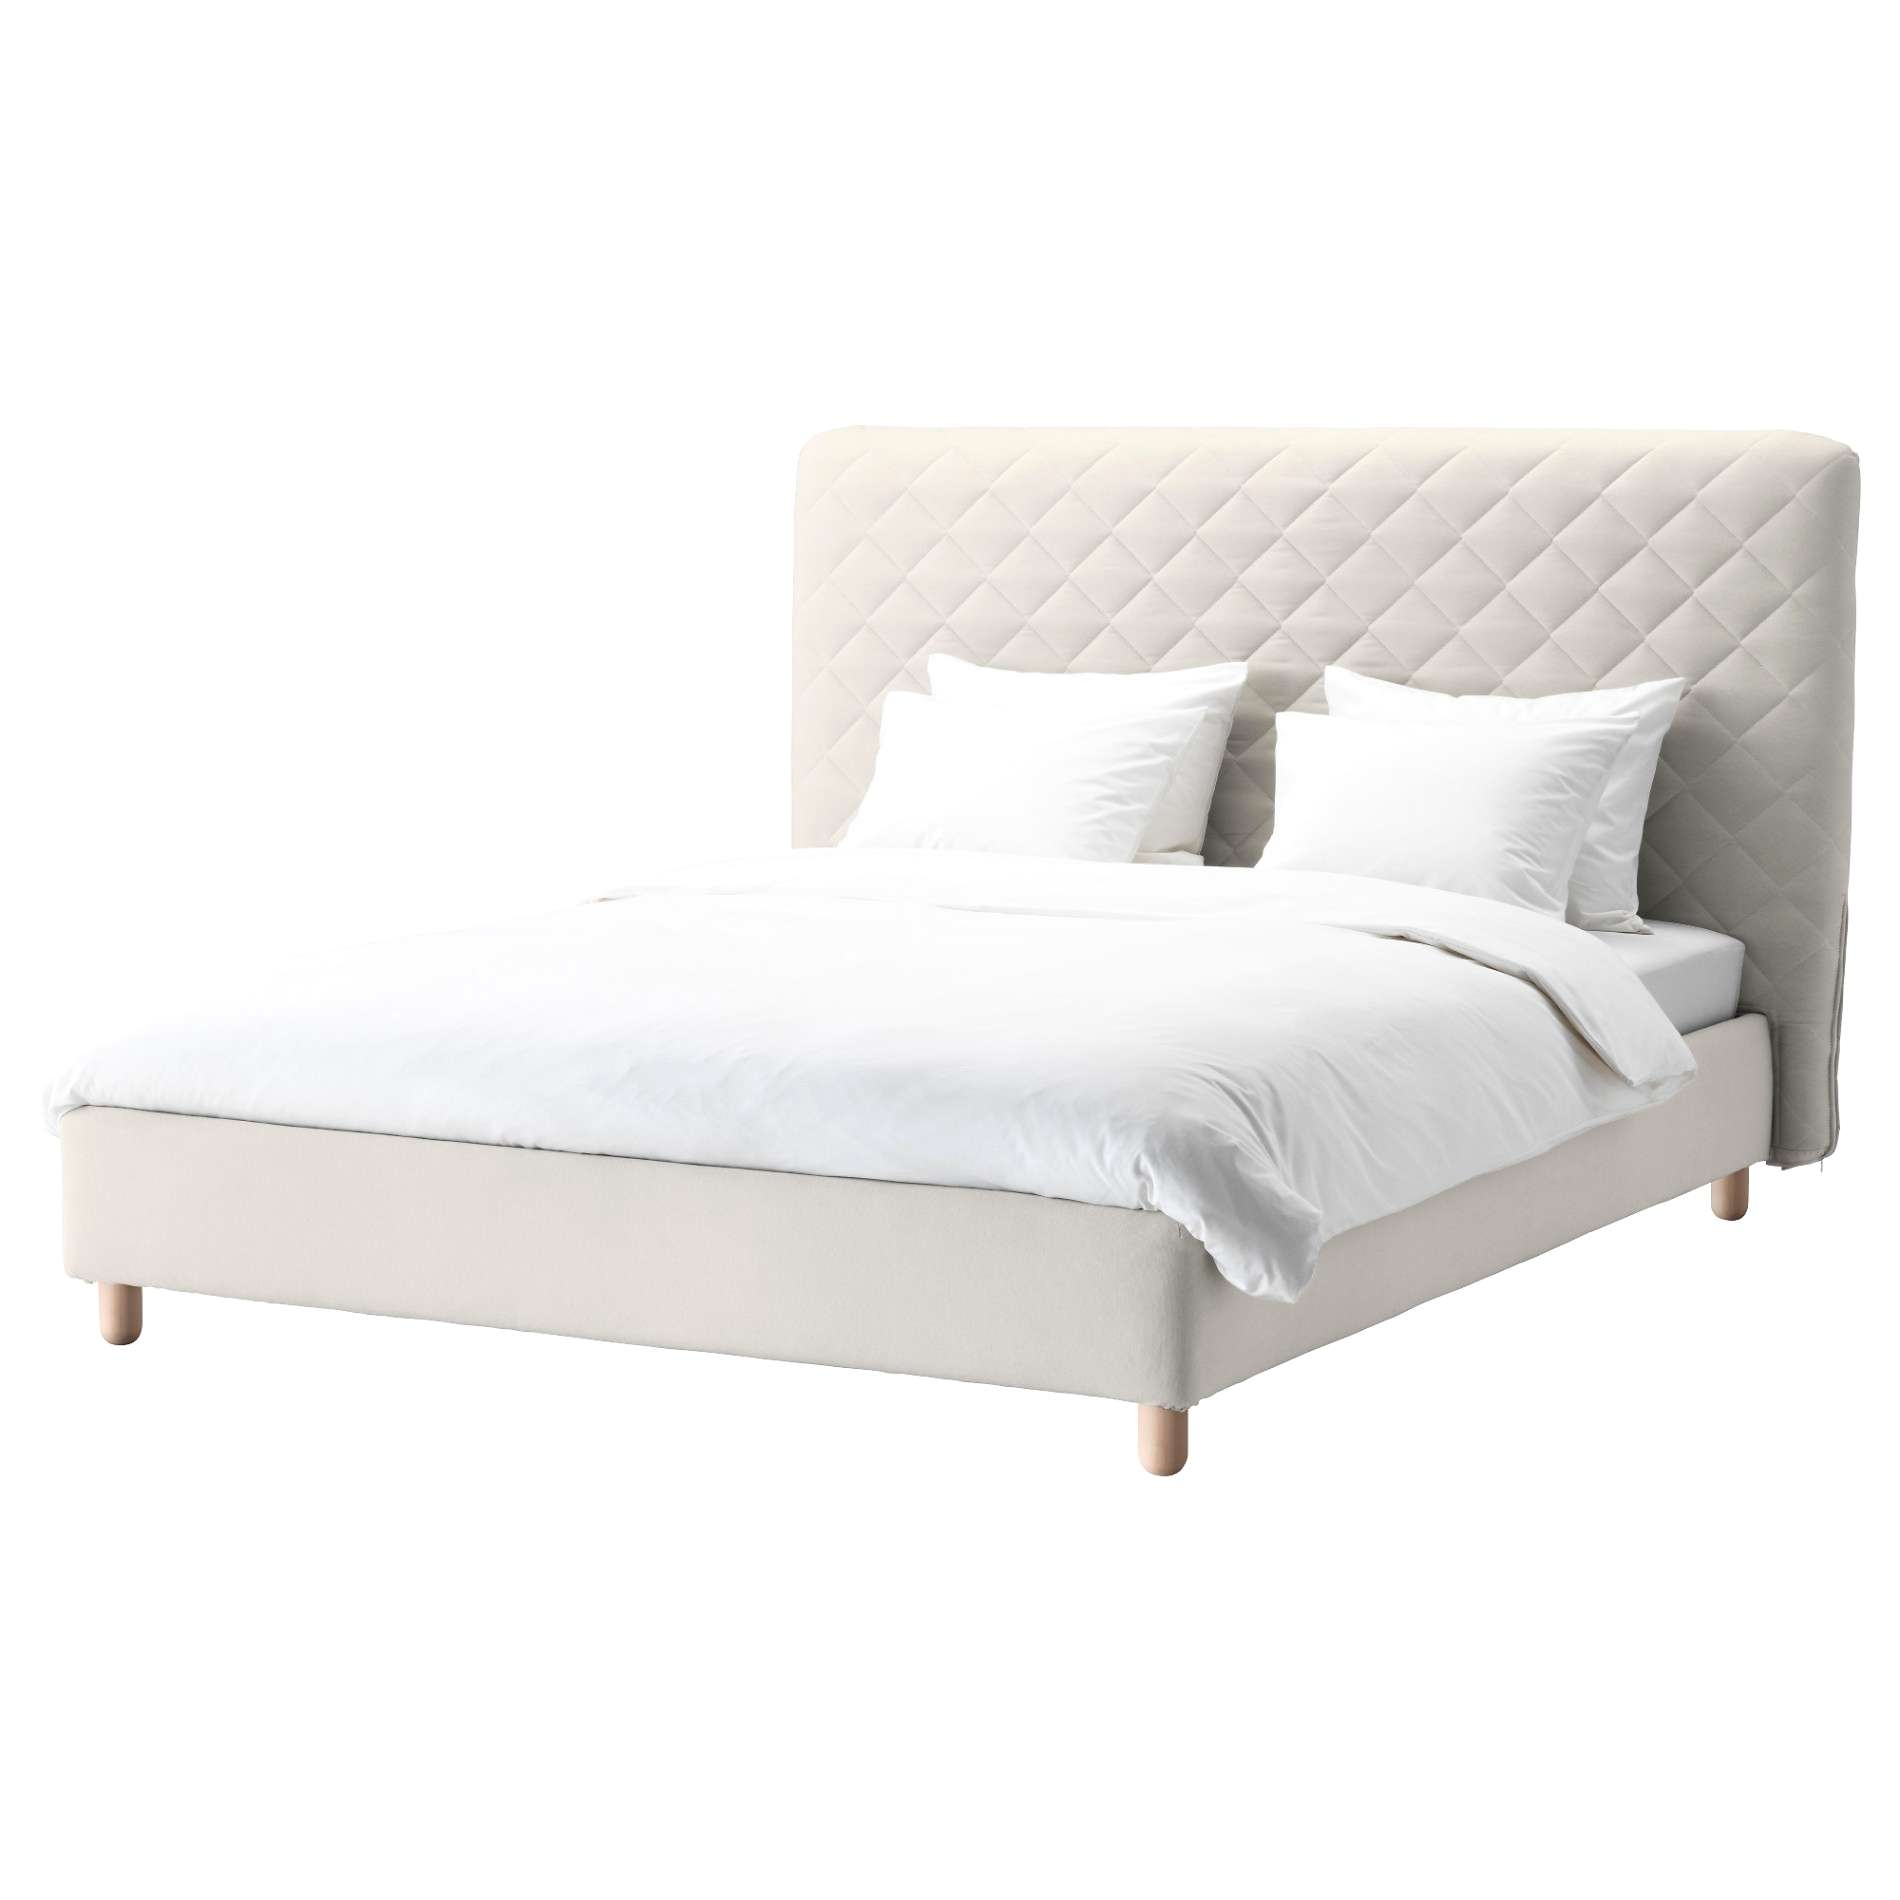 Twin Bed Desk bo Luxury Malm Bed Frame Best 1 80 Bett Awesome Twin Bett 0d